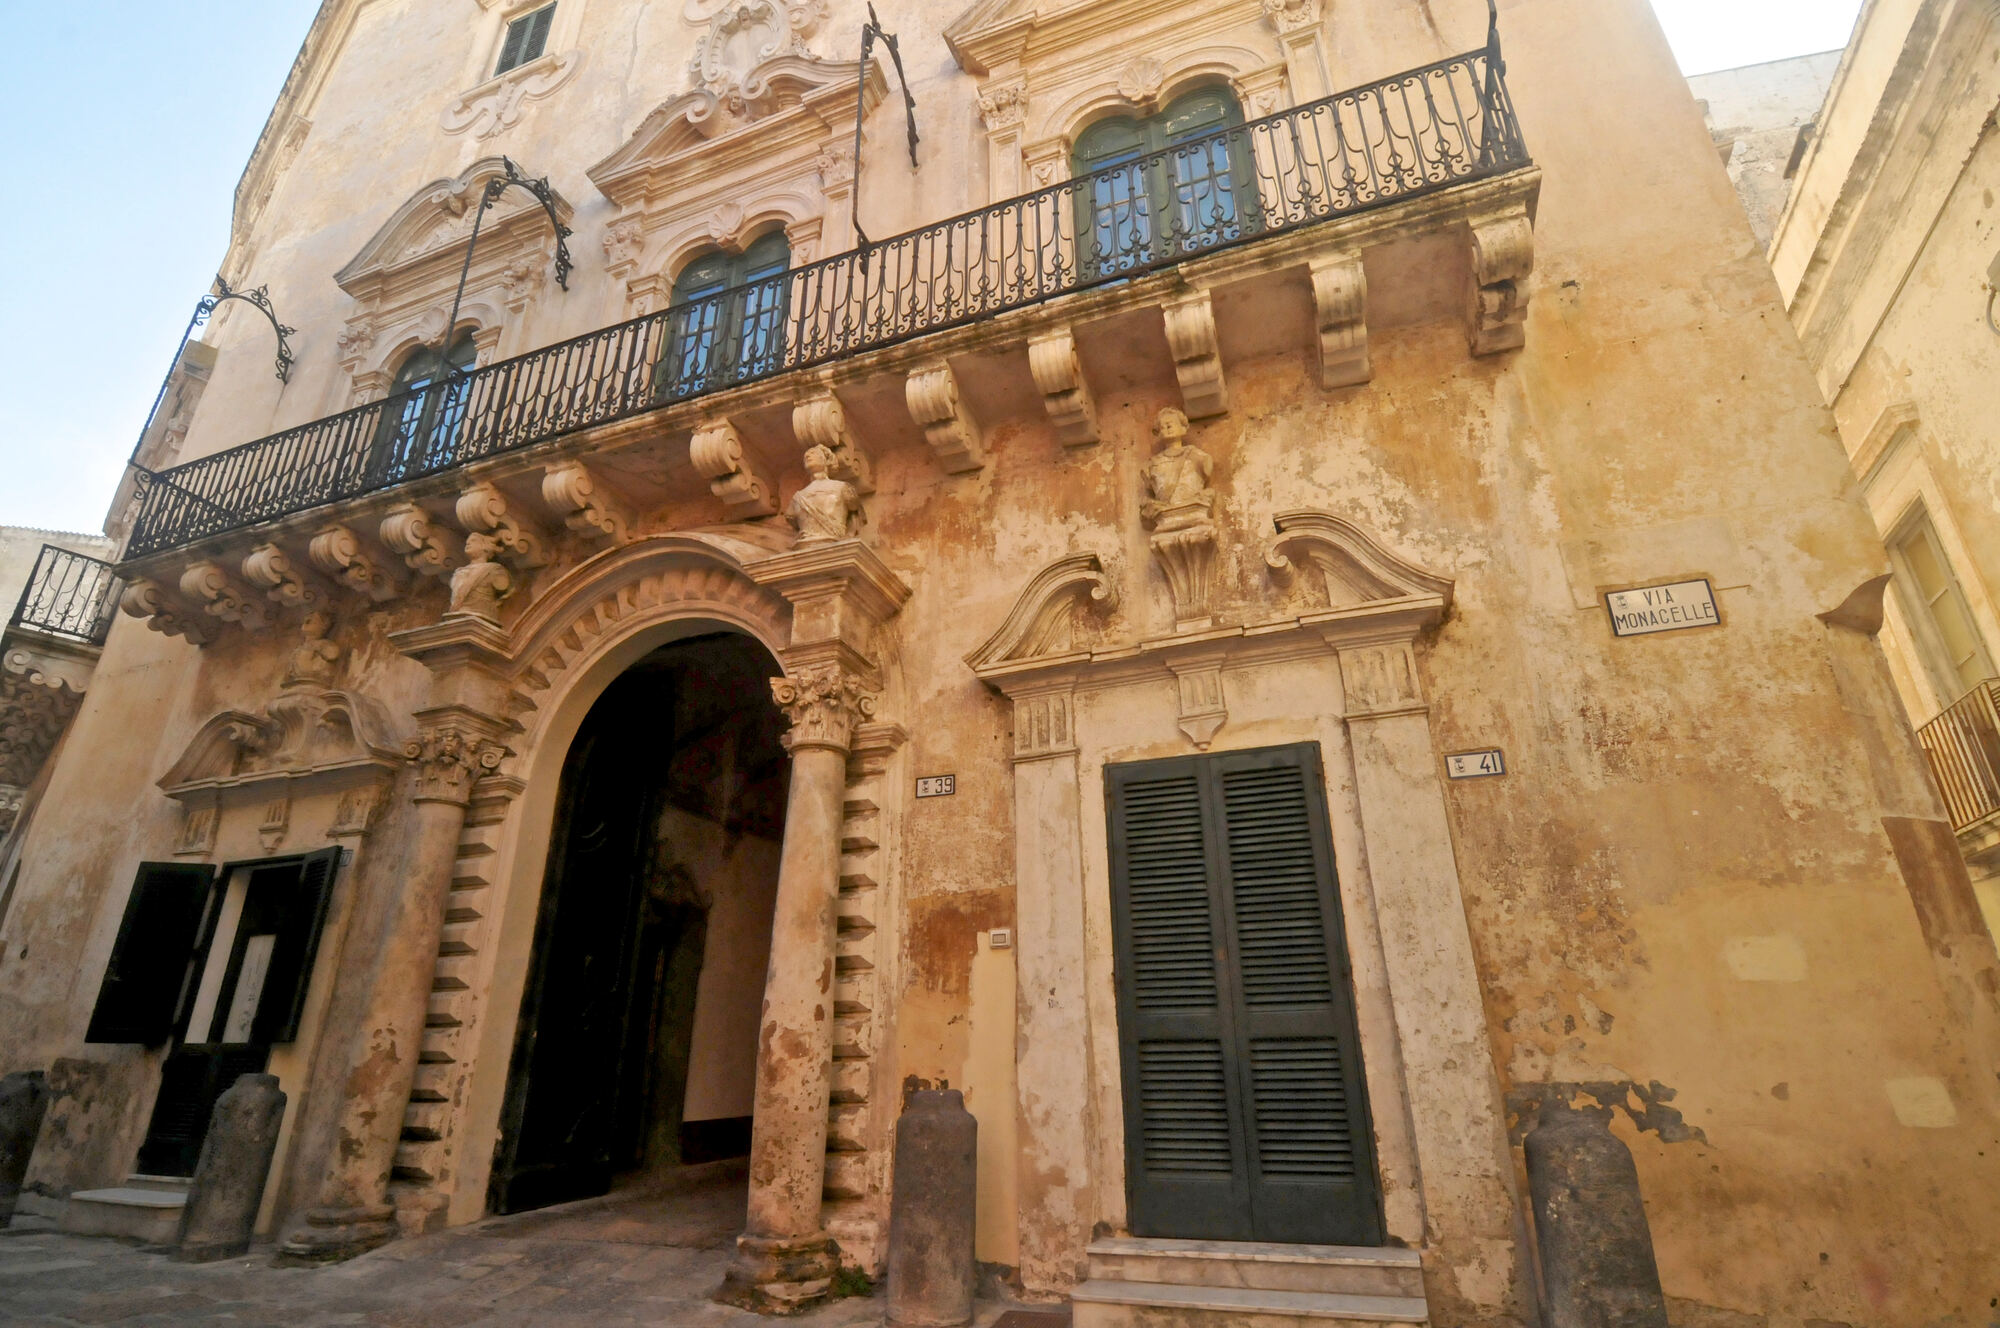 Palazzo Senape De Pace, dimora nobiliare con facciata sontuosa e interni ricchi di stucchi e decorazioni.